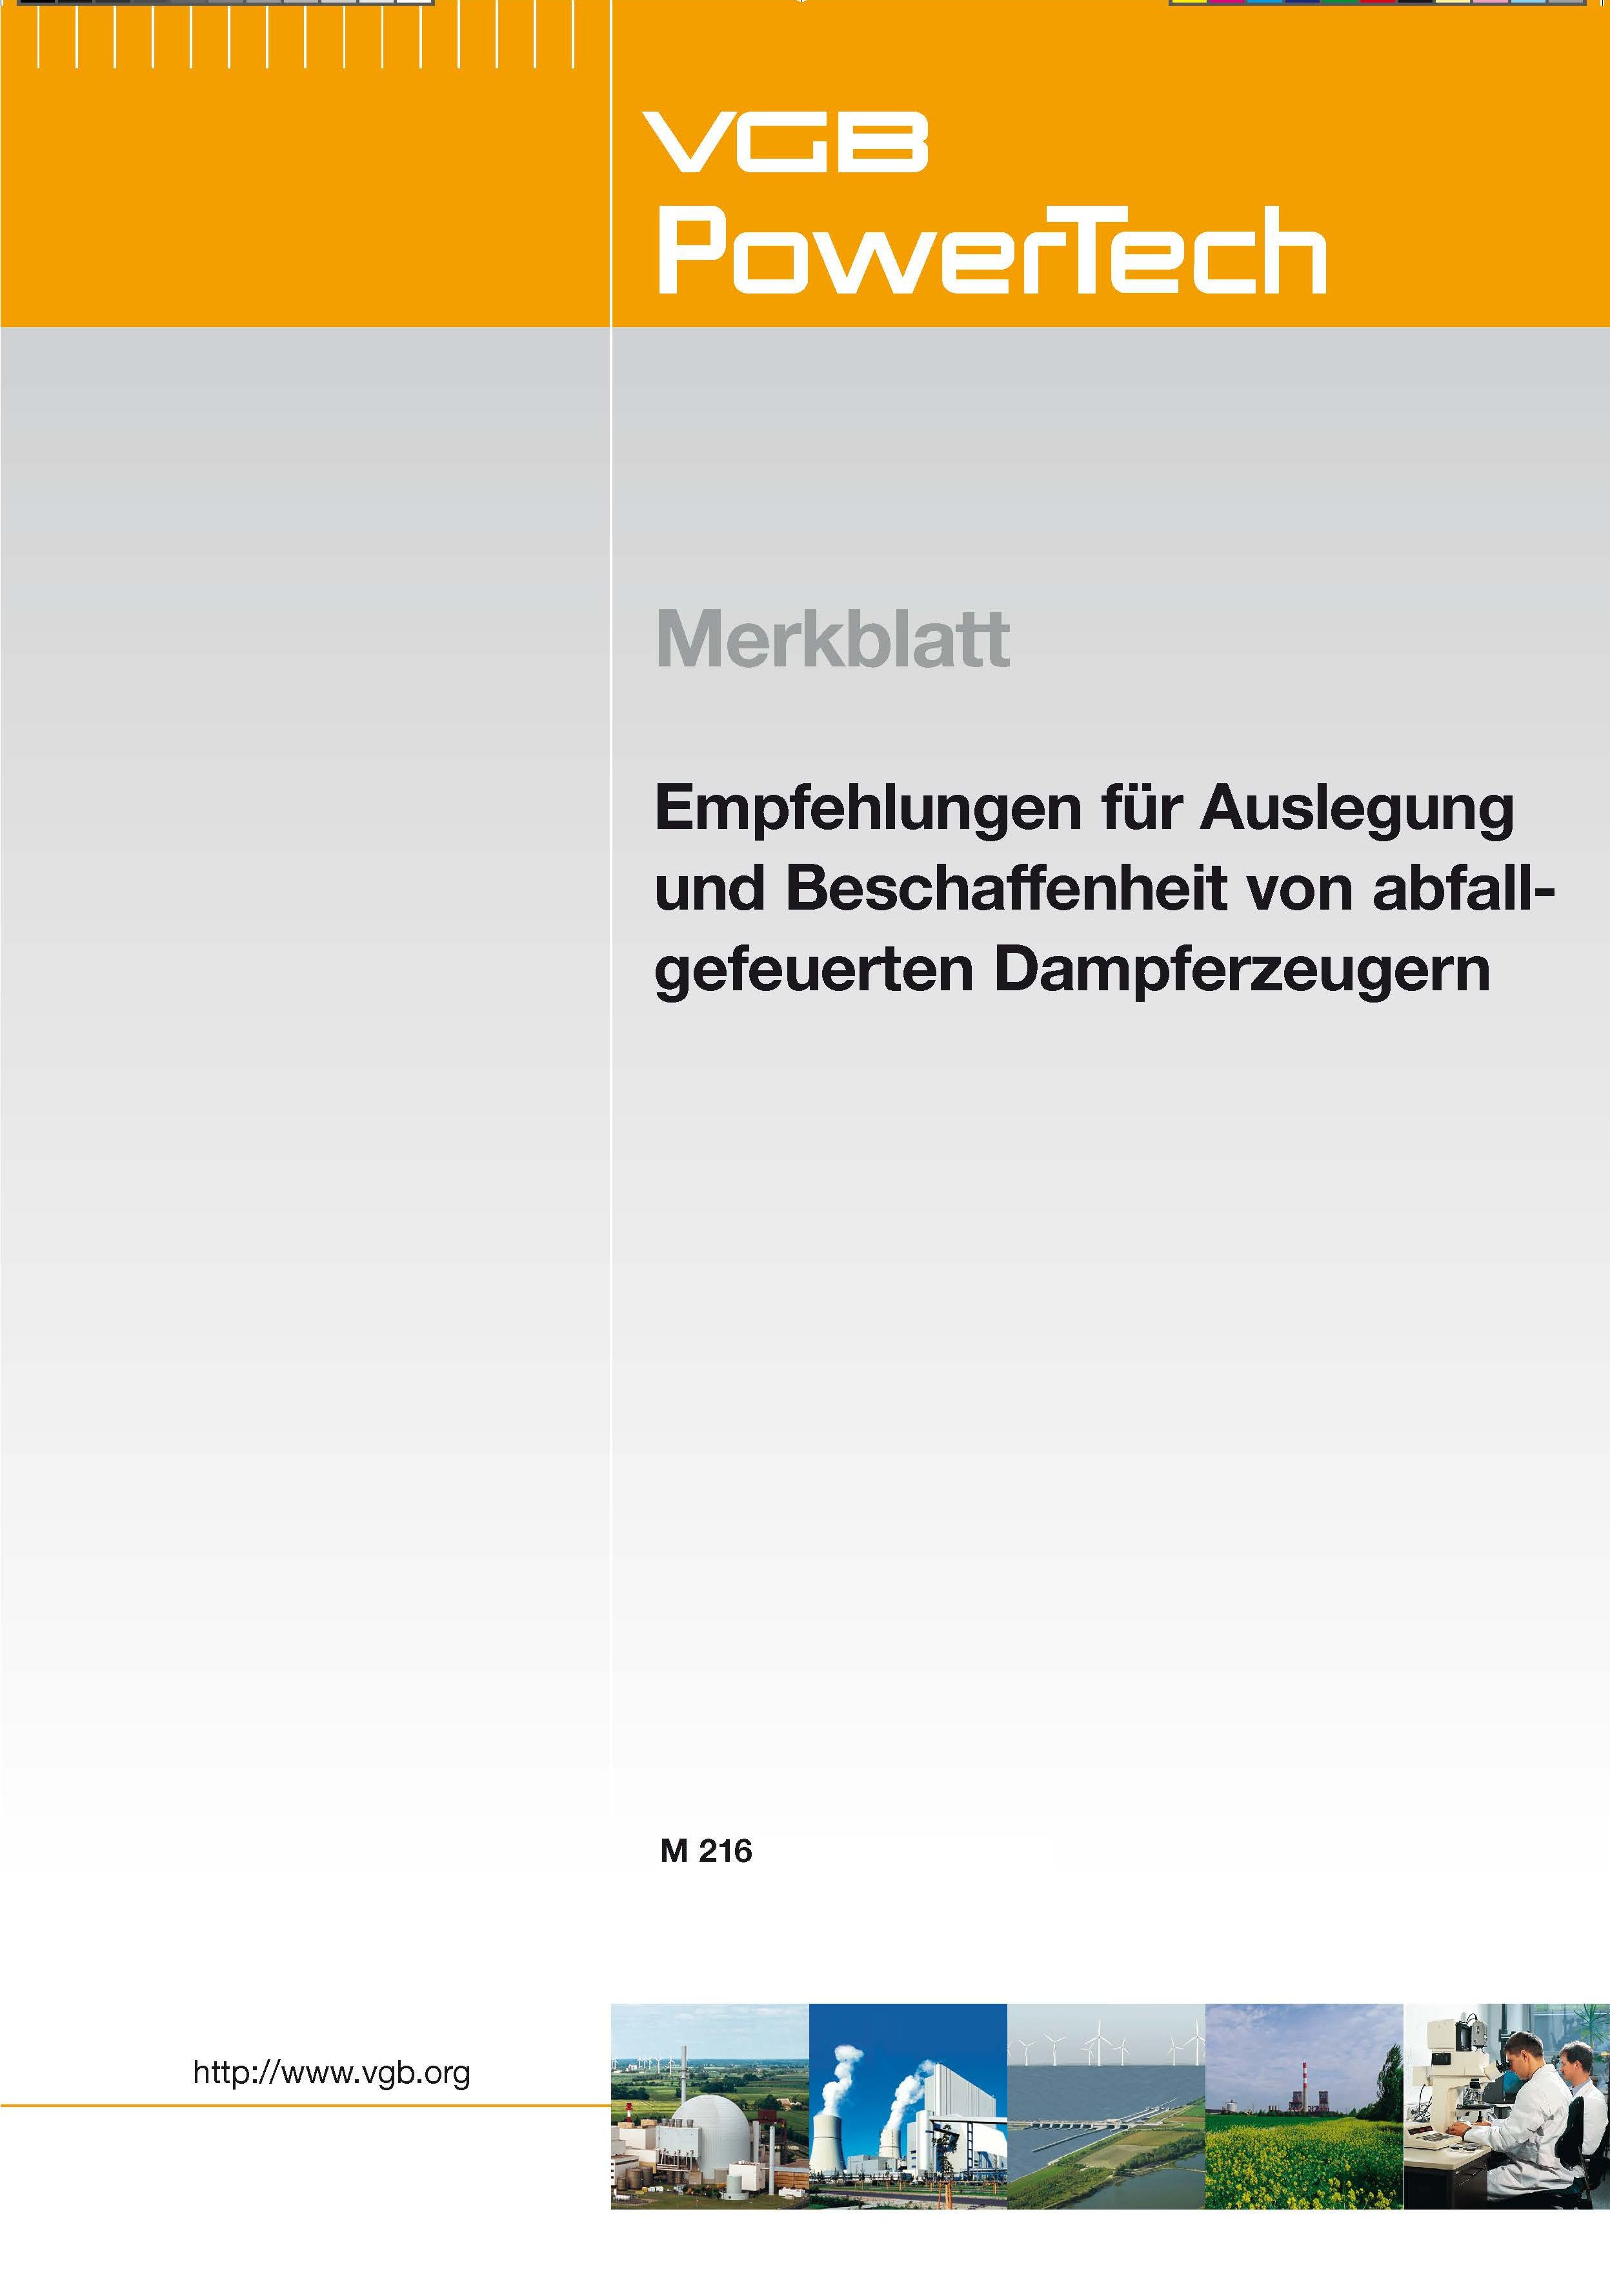 Merkblatt Empfehlungen für Auslegung und Beschaffenheit von abfallgefeuerten Dampferzeugern – 2009